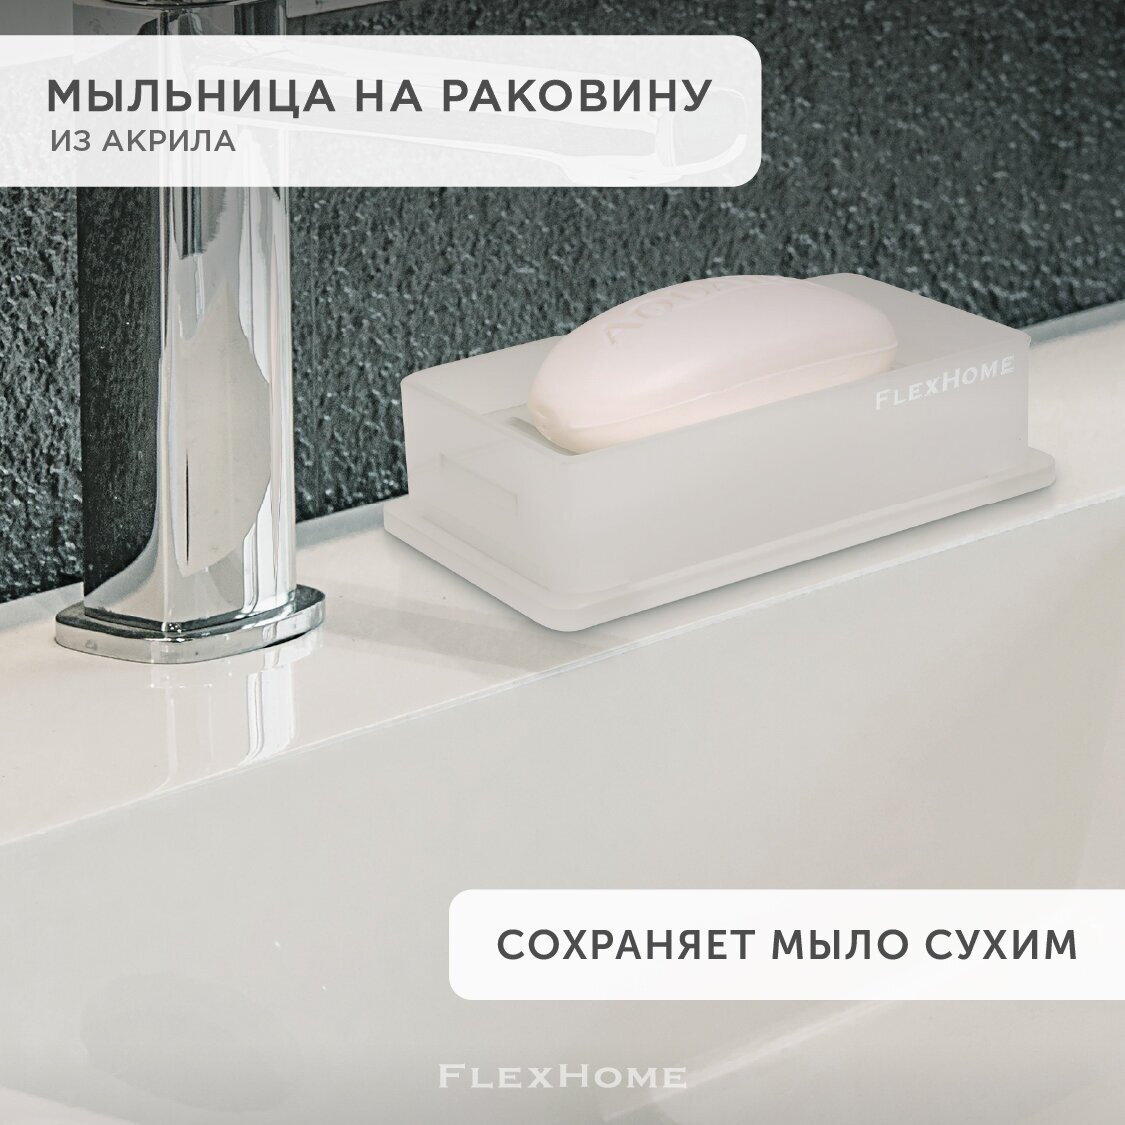 Мыльница для ванной на раковину противоскользящая FlexHome, из акрила, белая